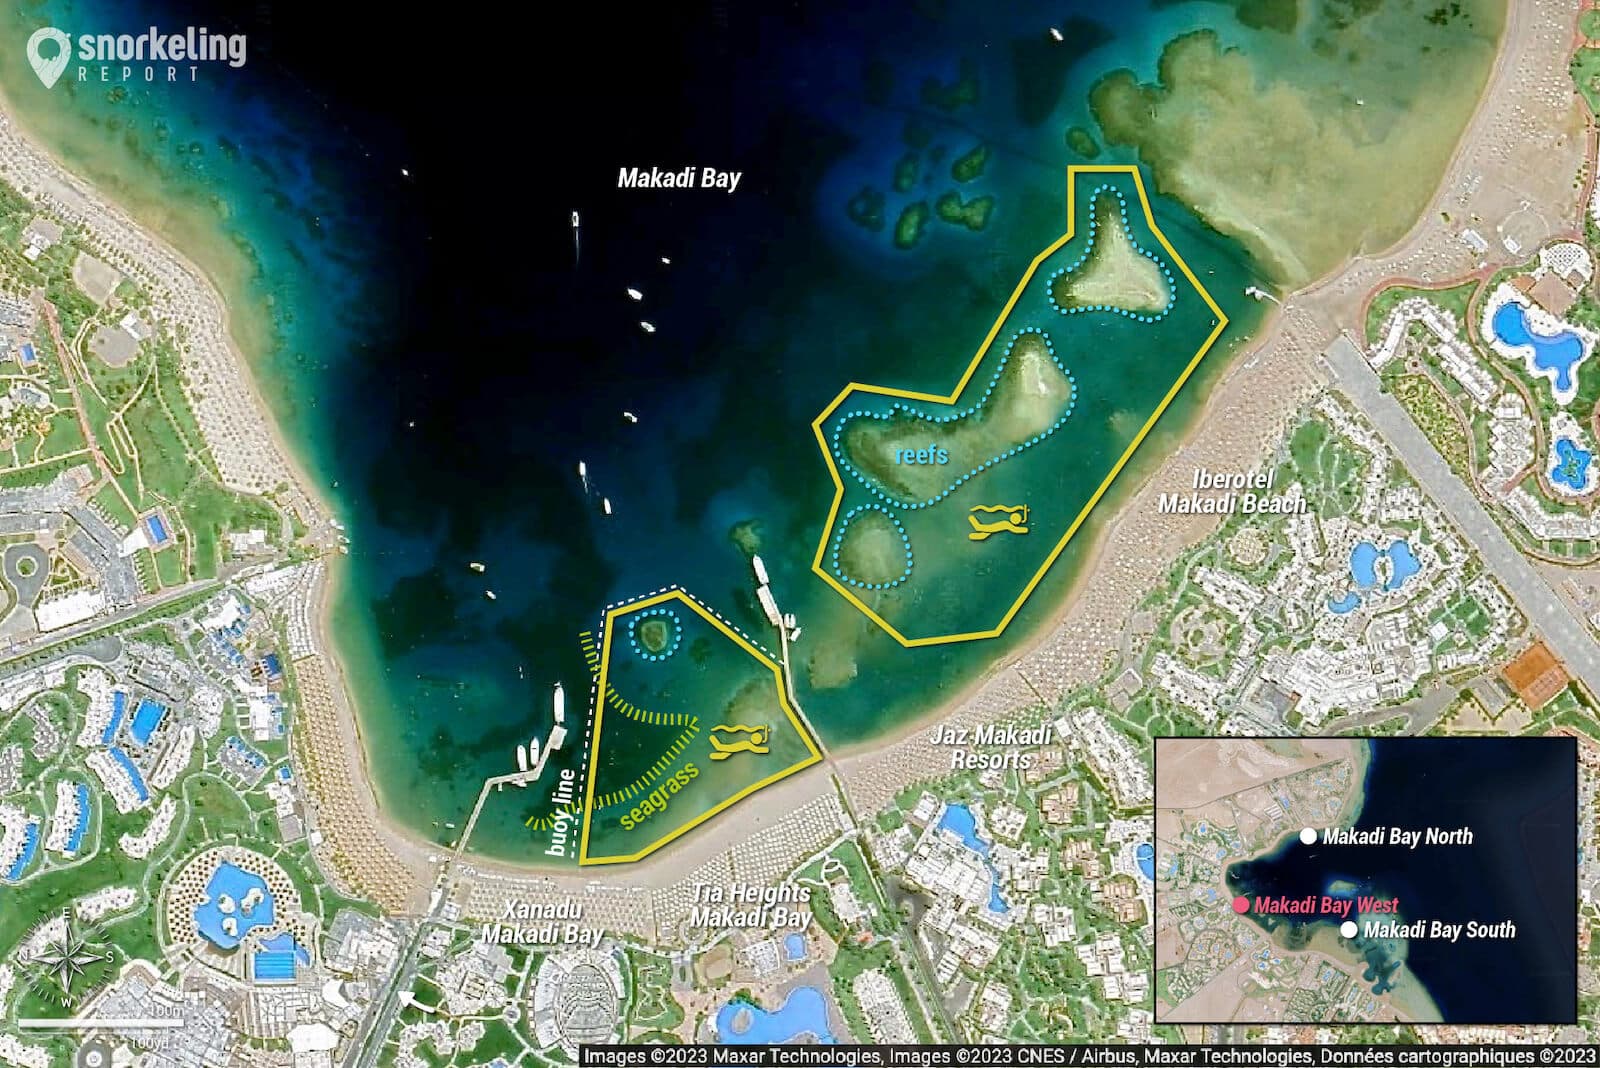 Makadi Bay West snorkeling map.